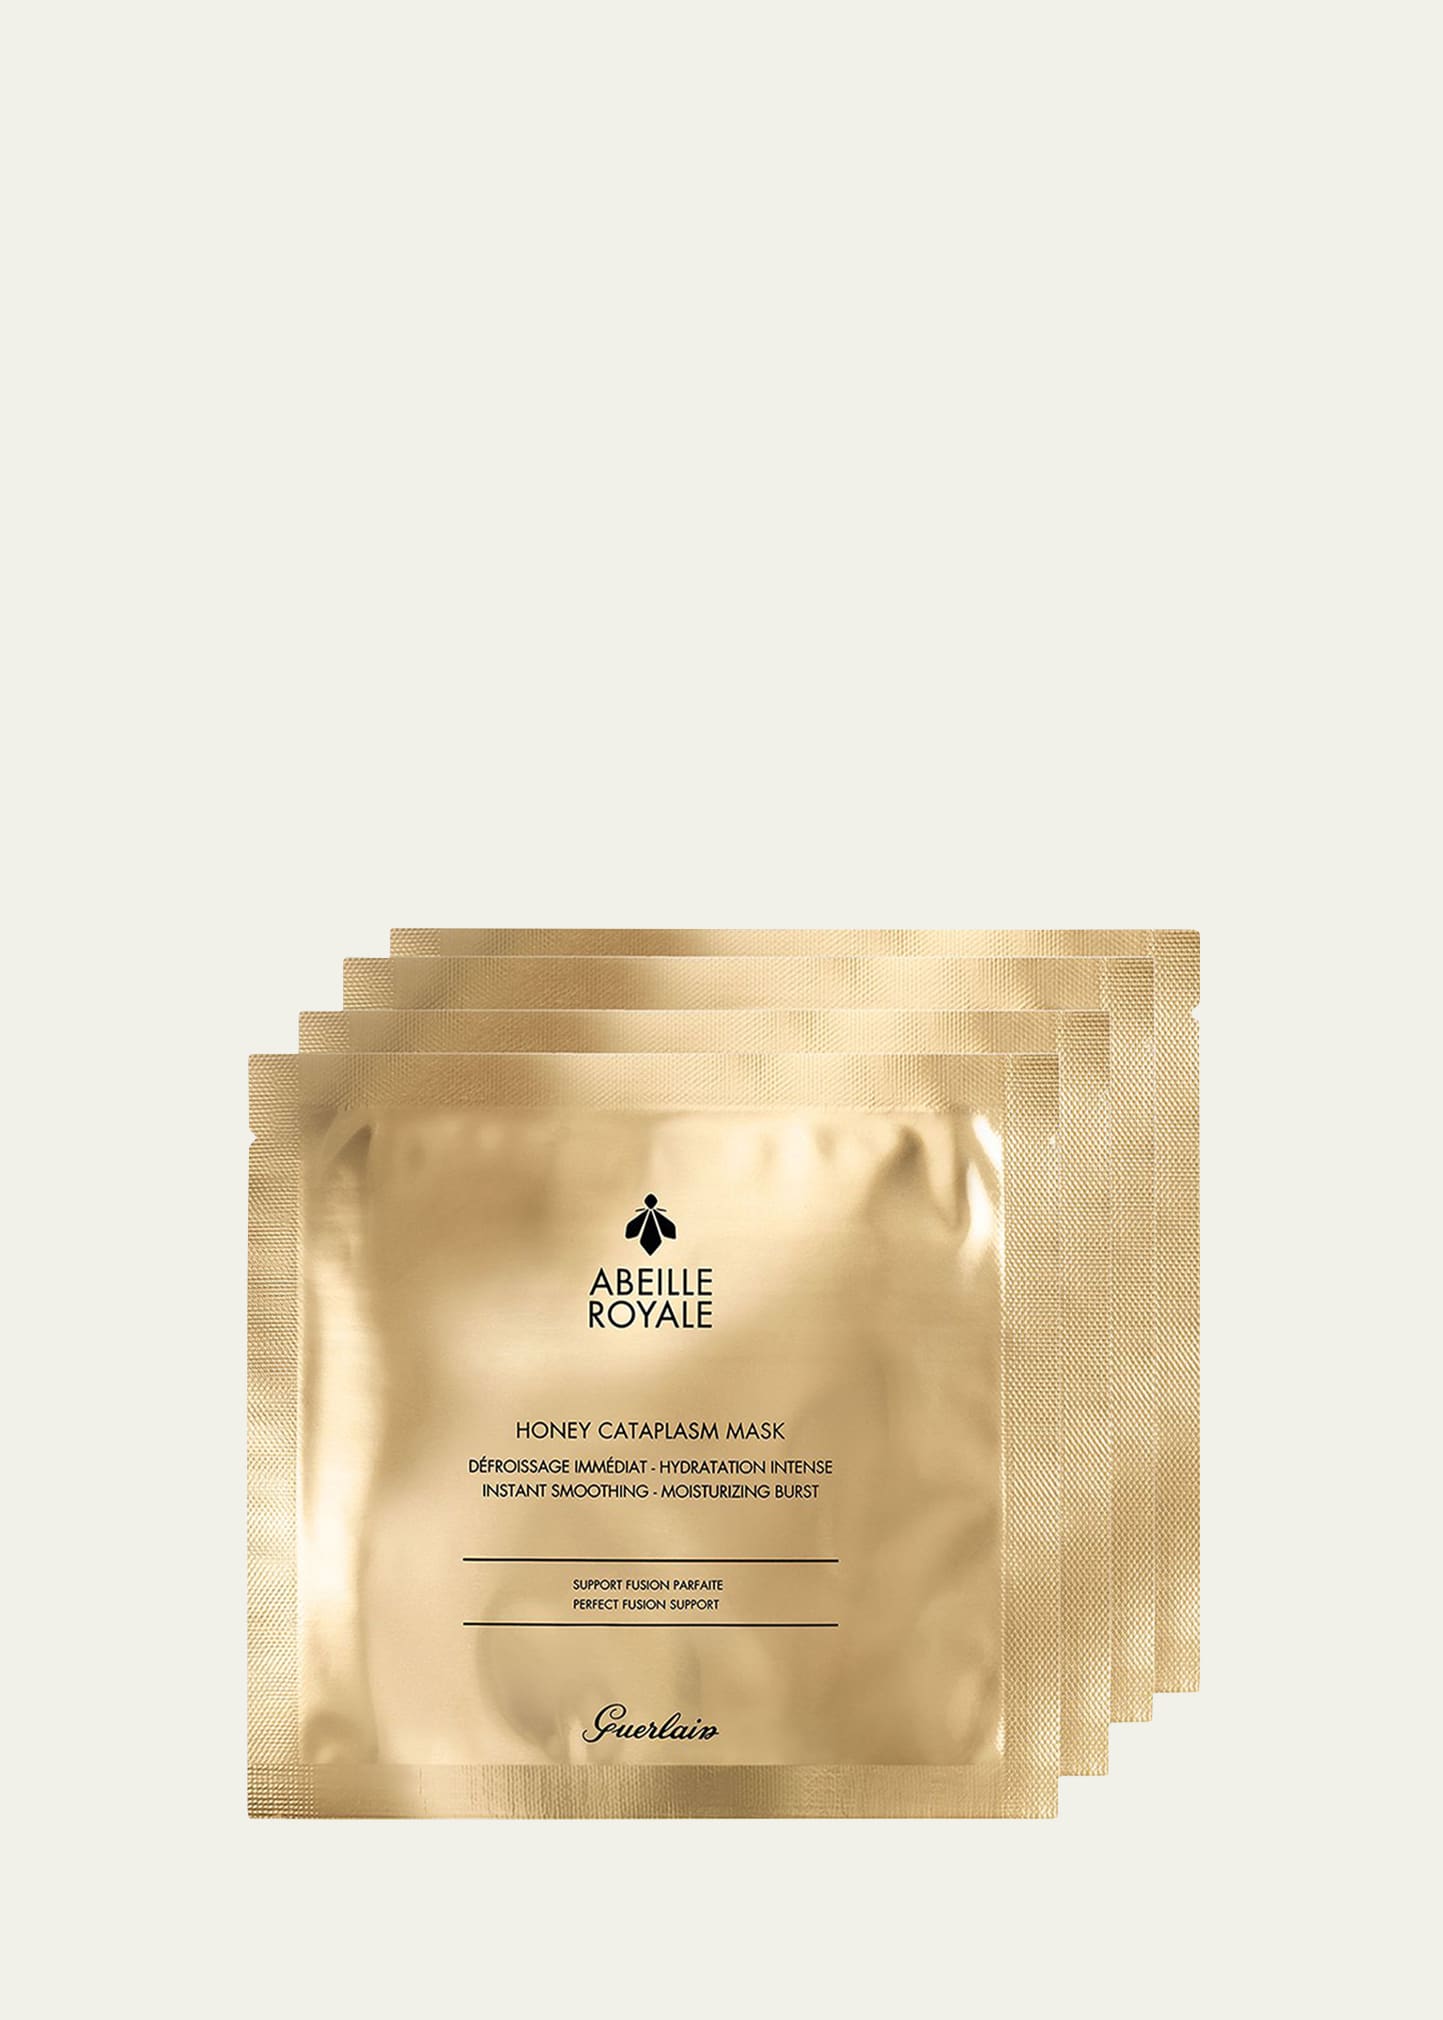 Abeille Royale Anti-Aging Honey Cataplasm Mask, 4-Pack